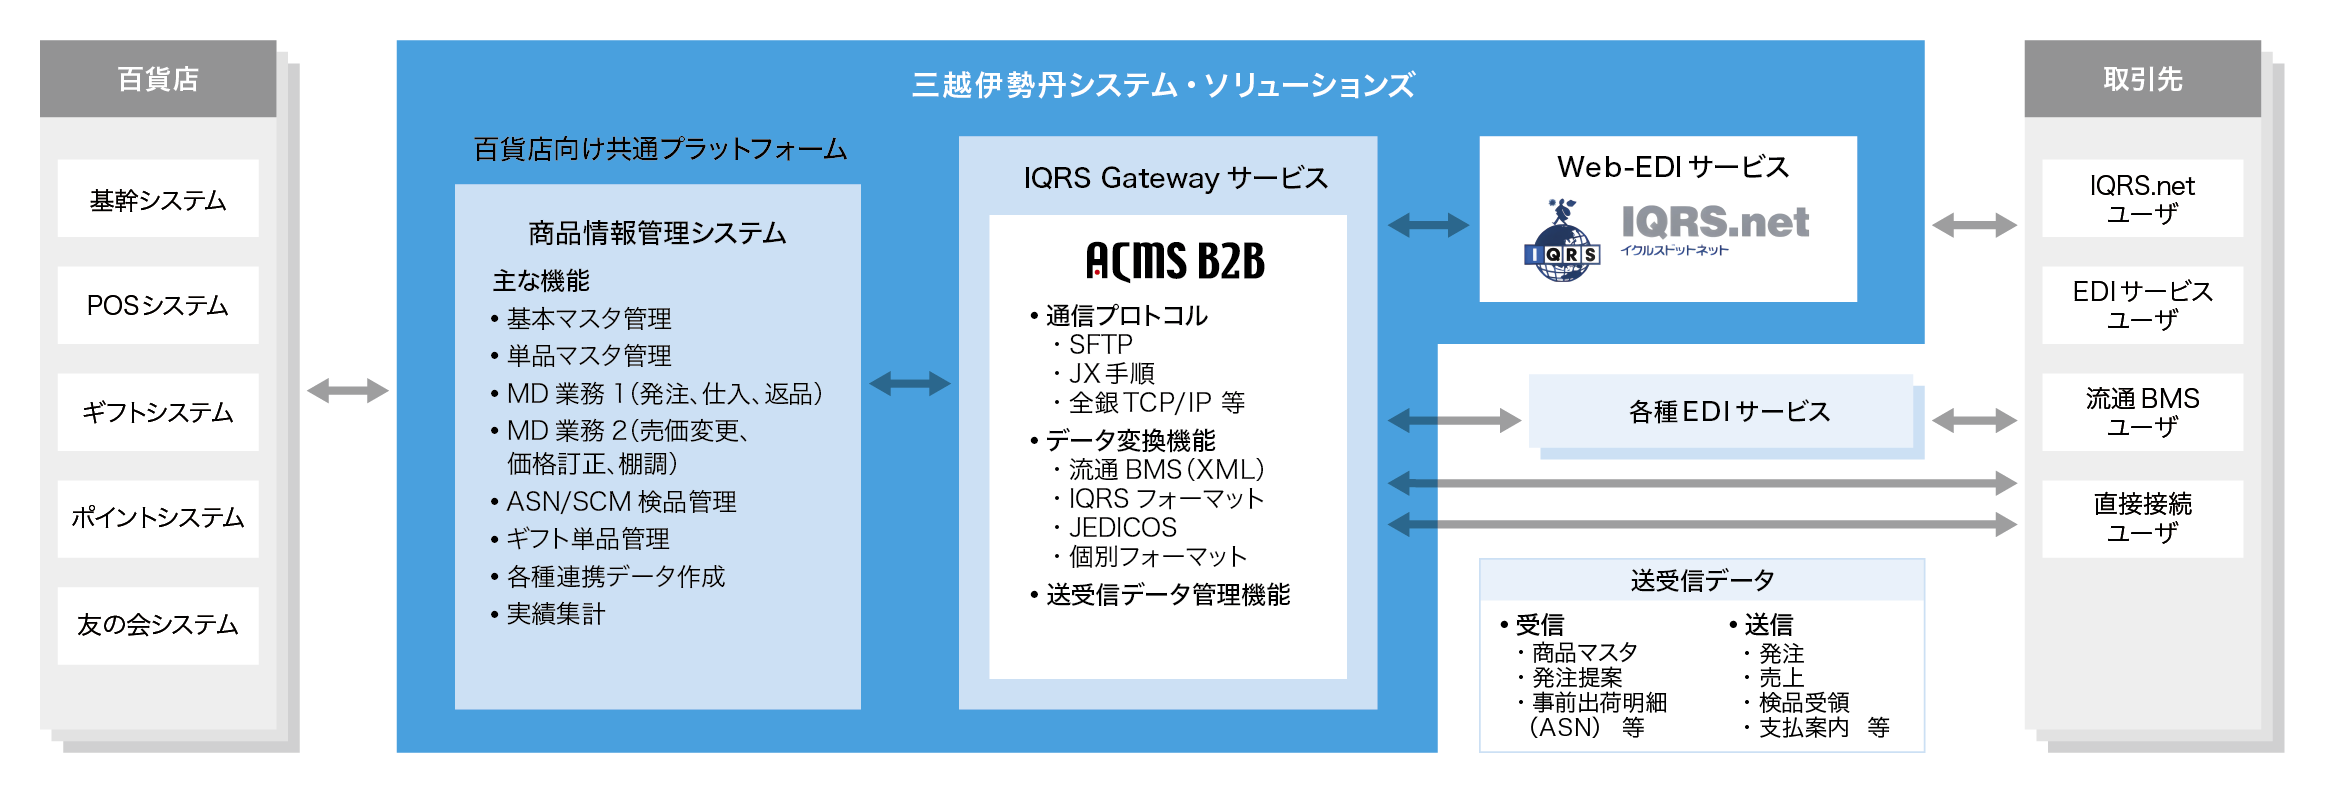 図：IMSの百貨店向け共通プラットフォーム システム構成イメージ